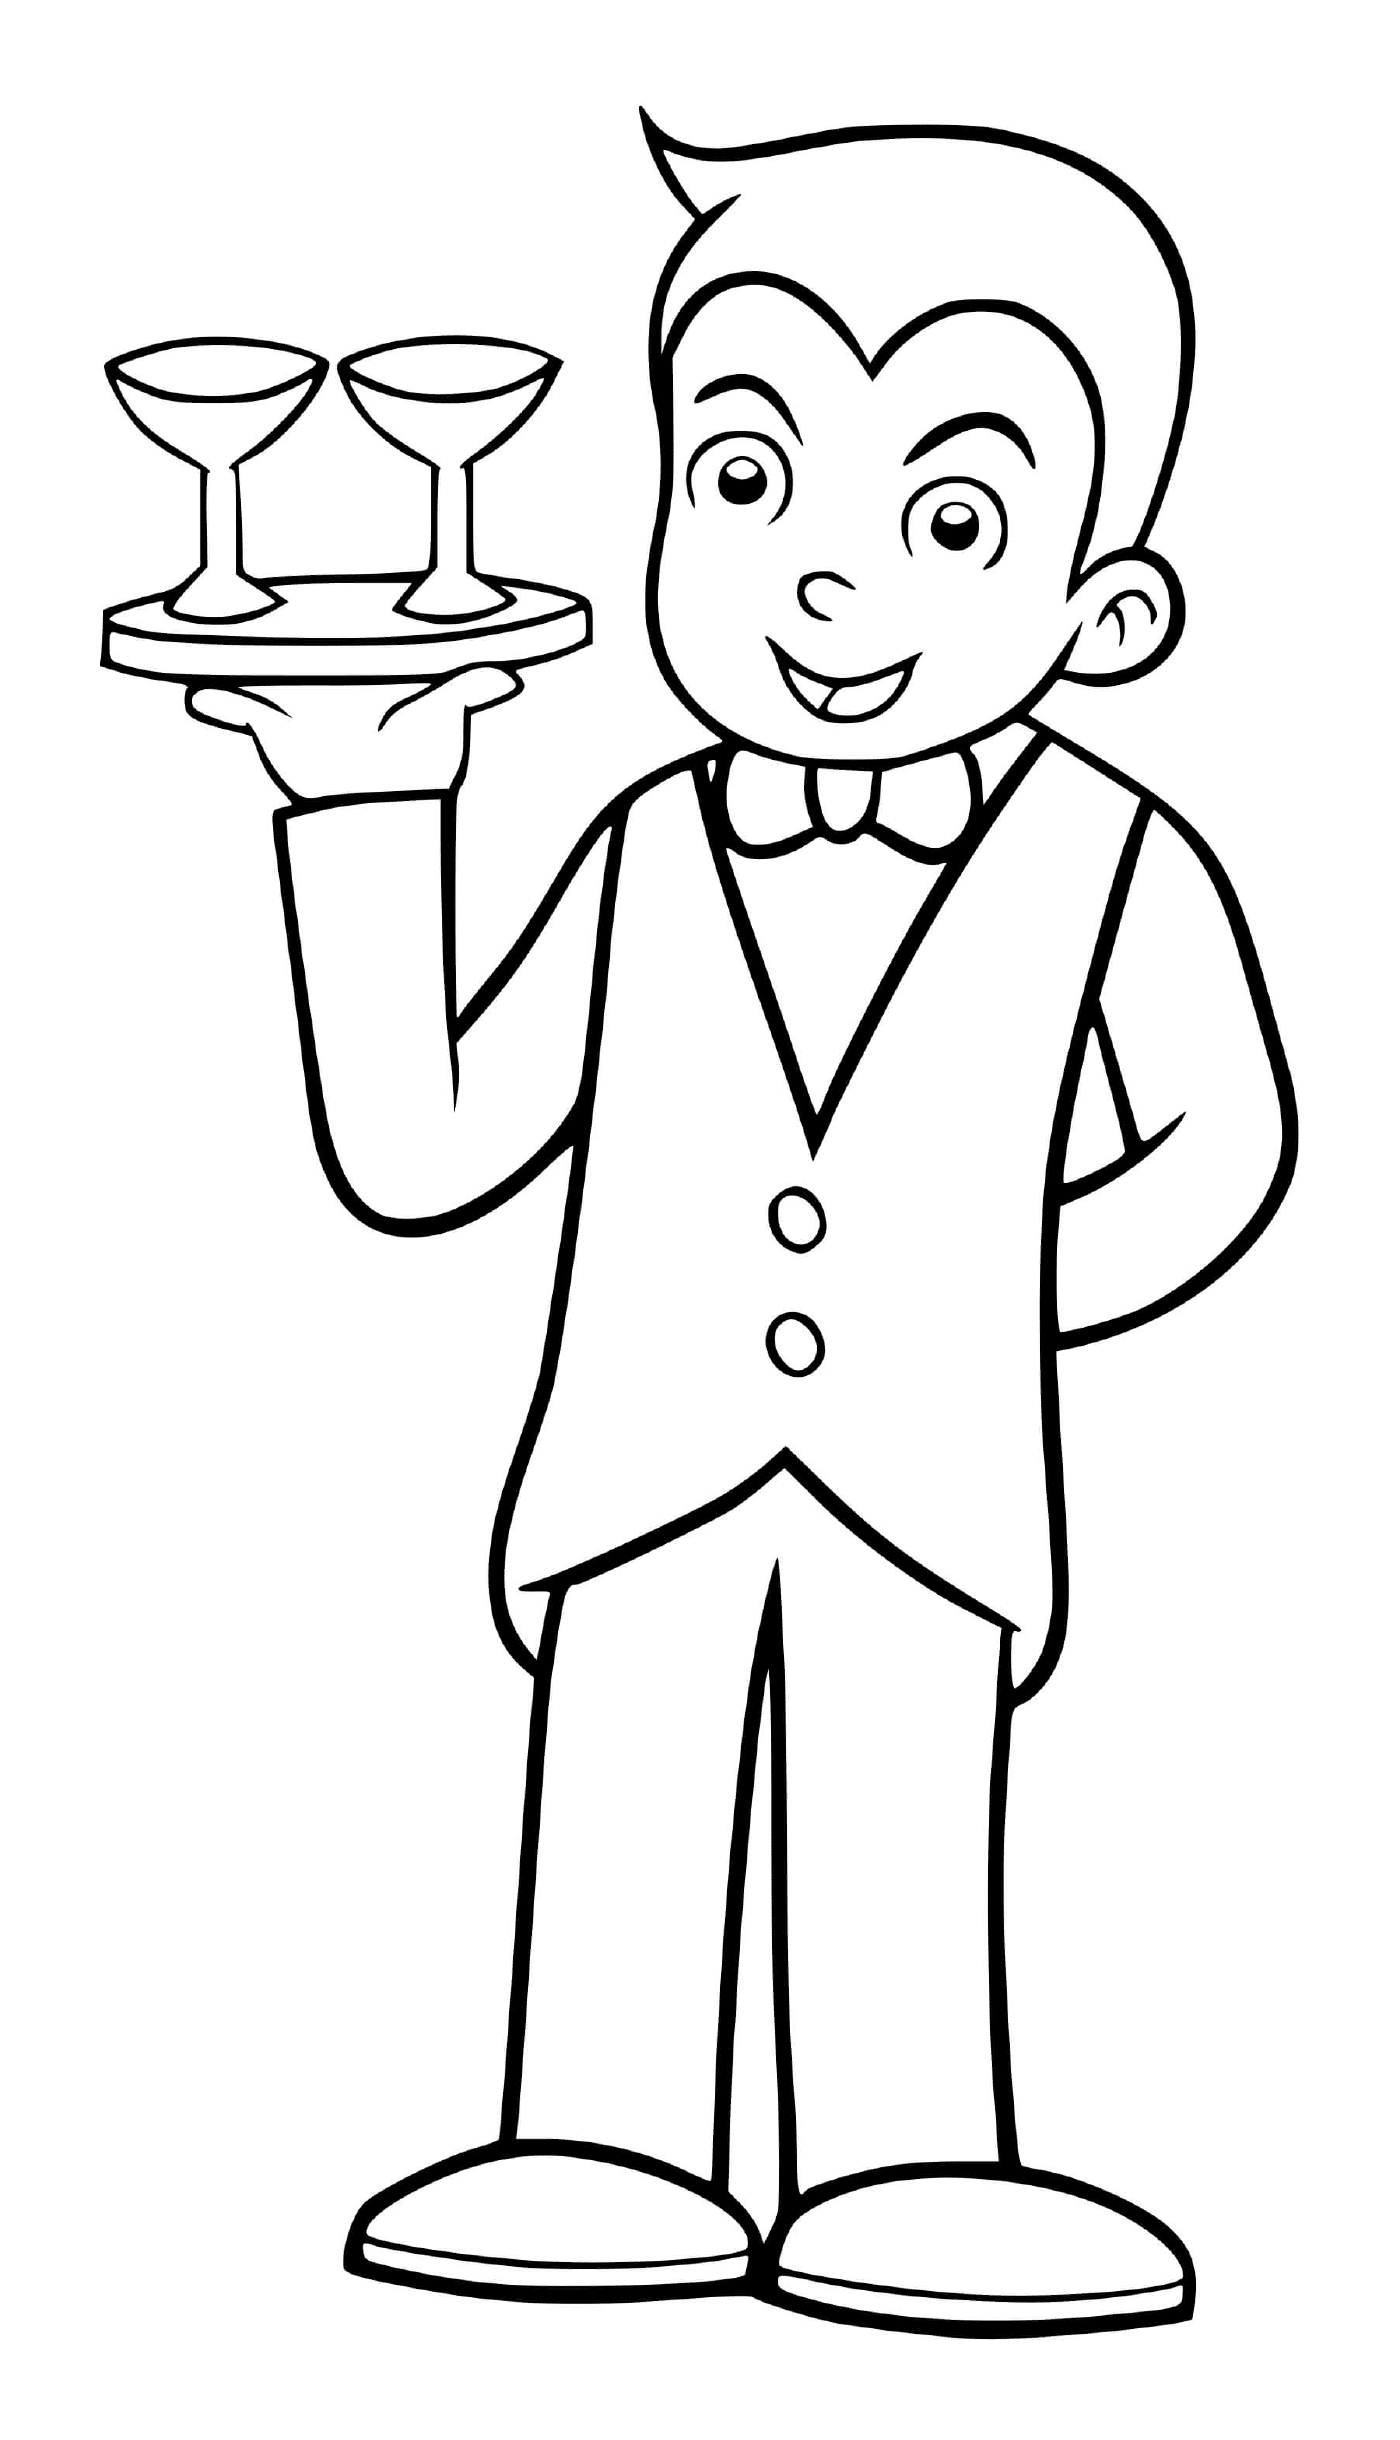  Мальчик притворяется официантом в ресторане 